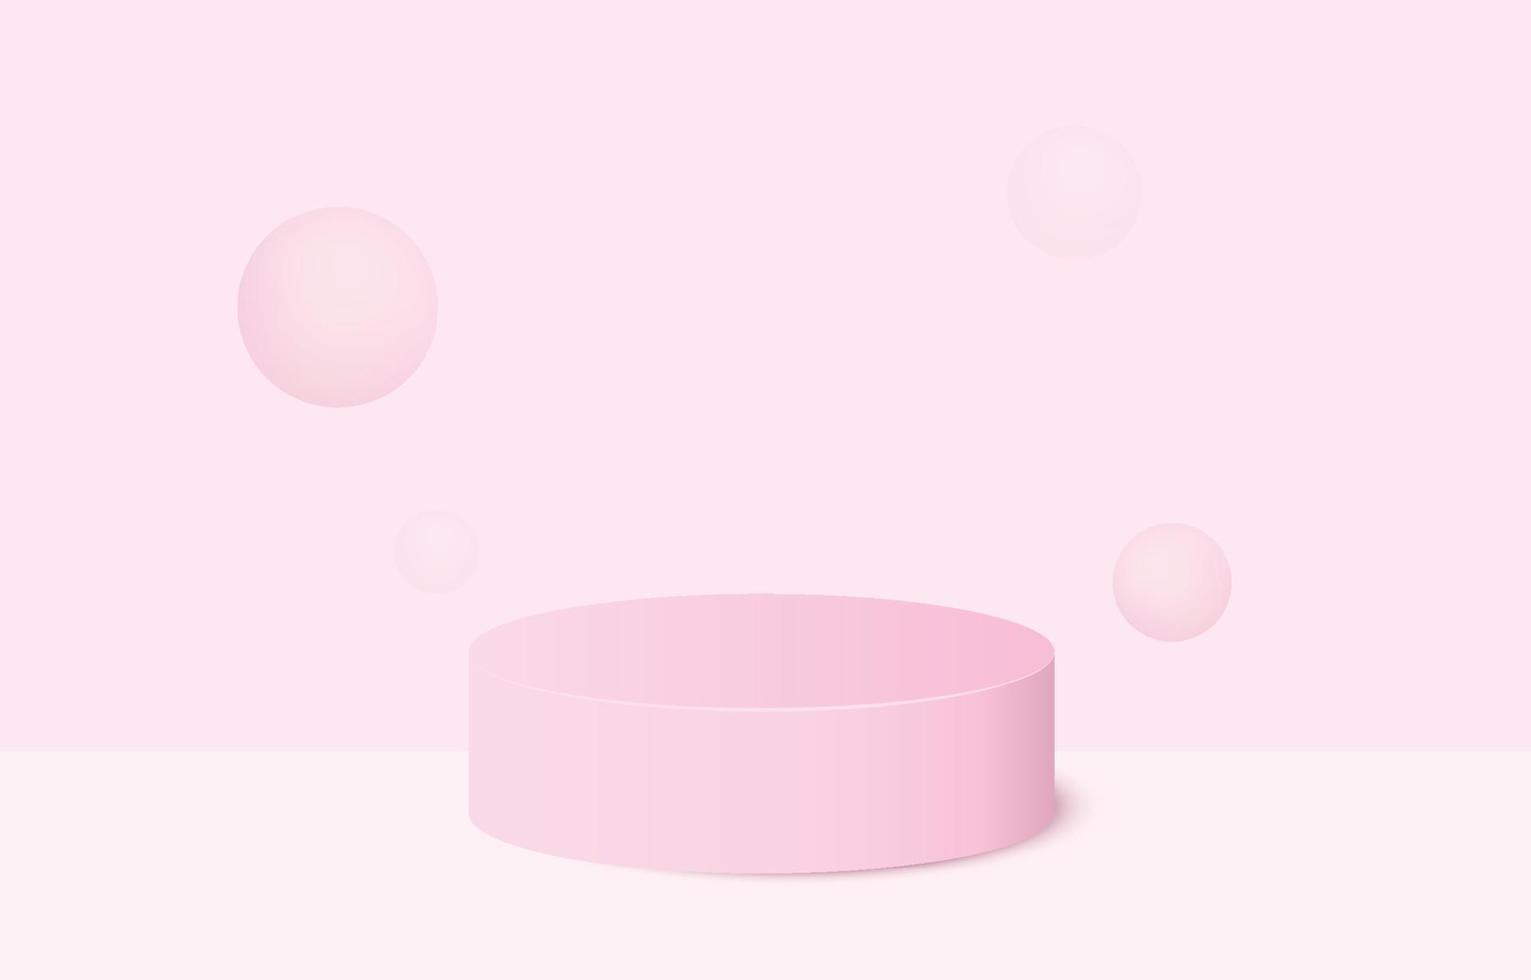 podio de pedestal de cilindro 3d realista rosa con fondo pastel. plataforma geométrica de representación vectorial abstracta. presentación de exhibición de productos. escena mínima. vector